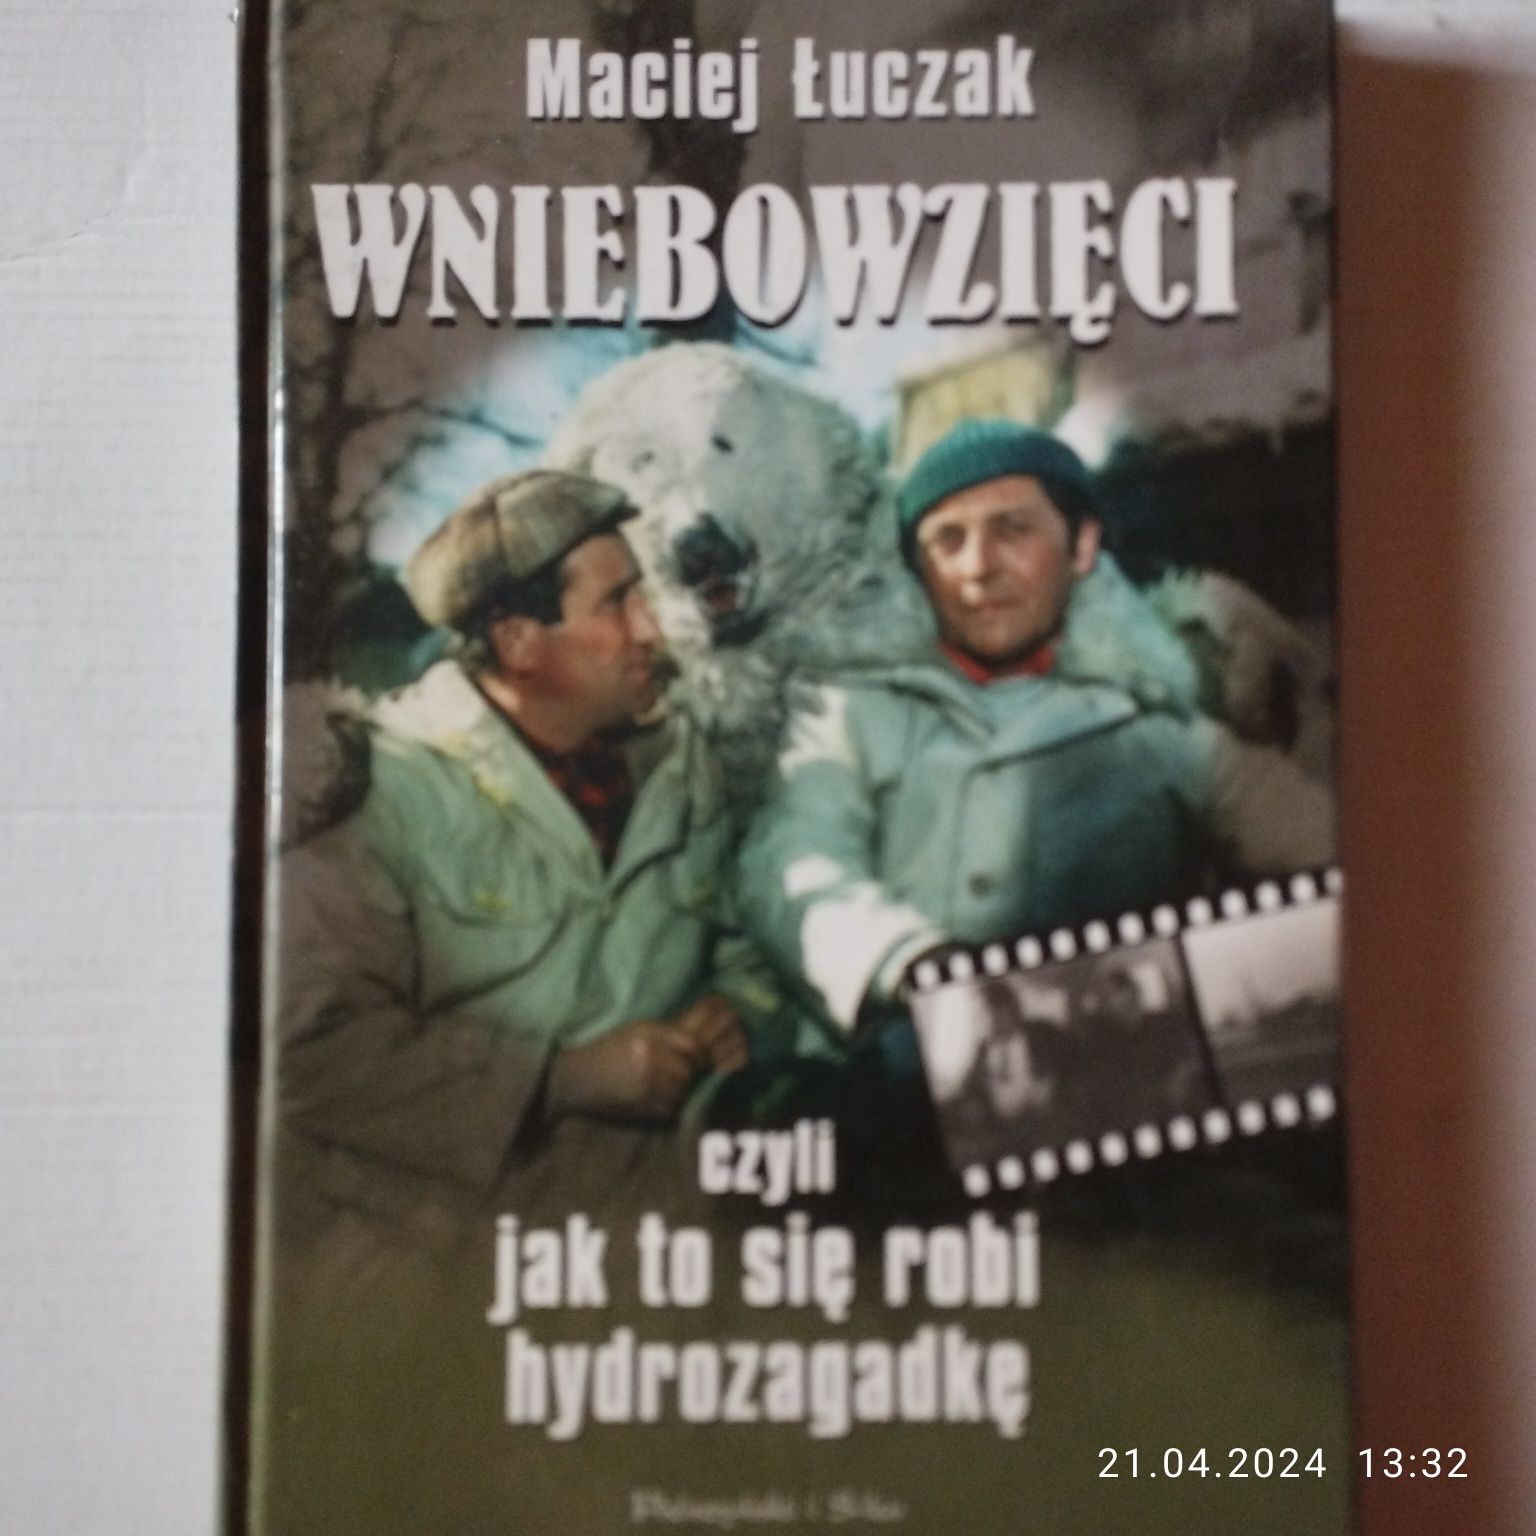 Wniebowzięci , czyli jak się robi hydrozagadkę - Maciej Łuczak.